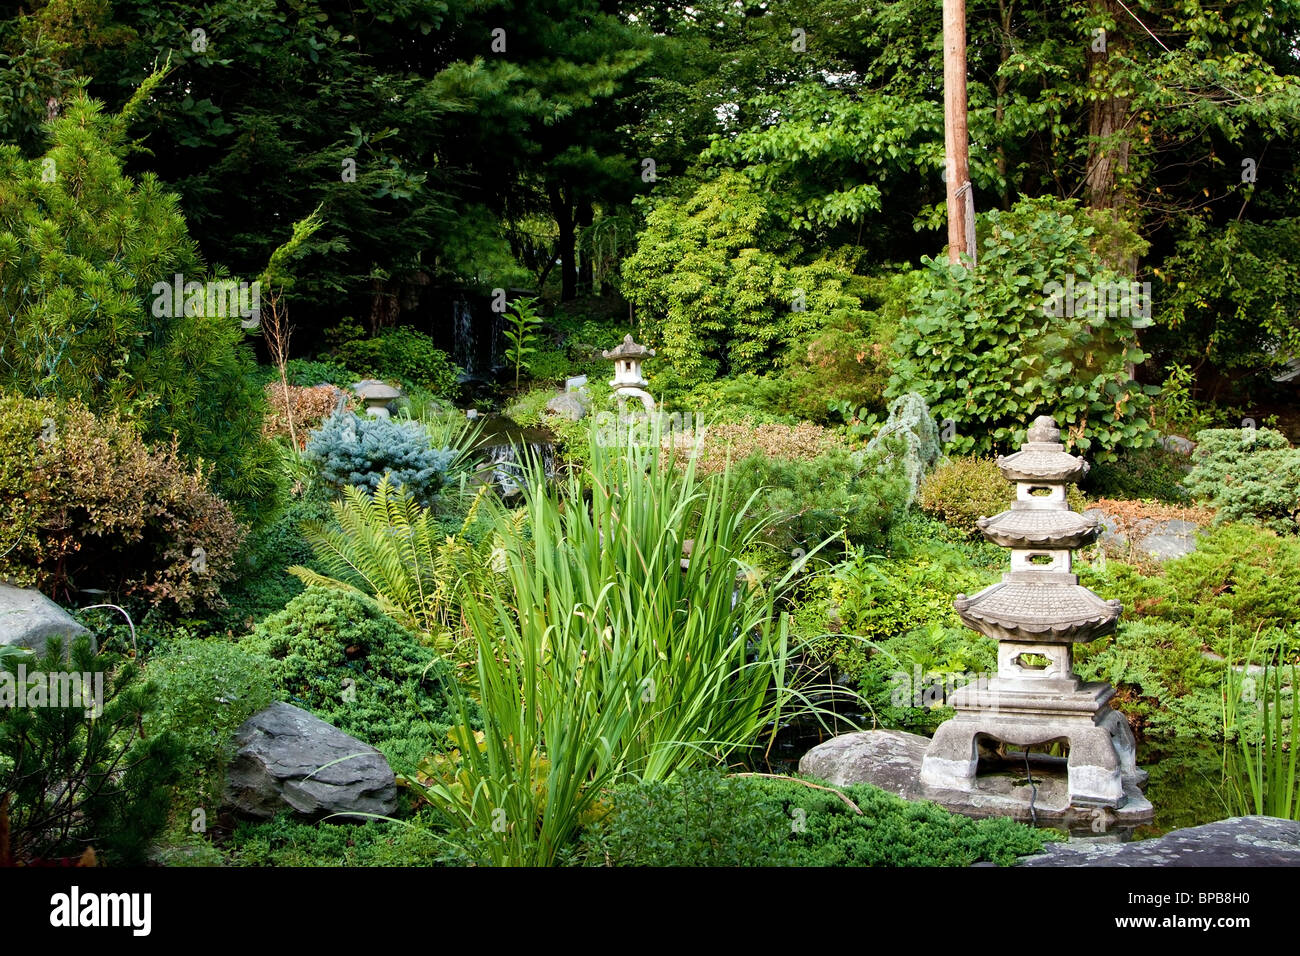 Japanischer Zen-Garten für Meditation und Entspannung, gefüllt mit grüner Vegetation und Granit Rokkaku Yukimi Laternen verwendet. Stockfoto